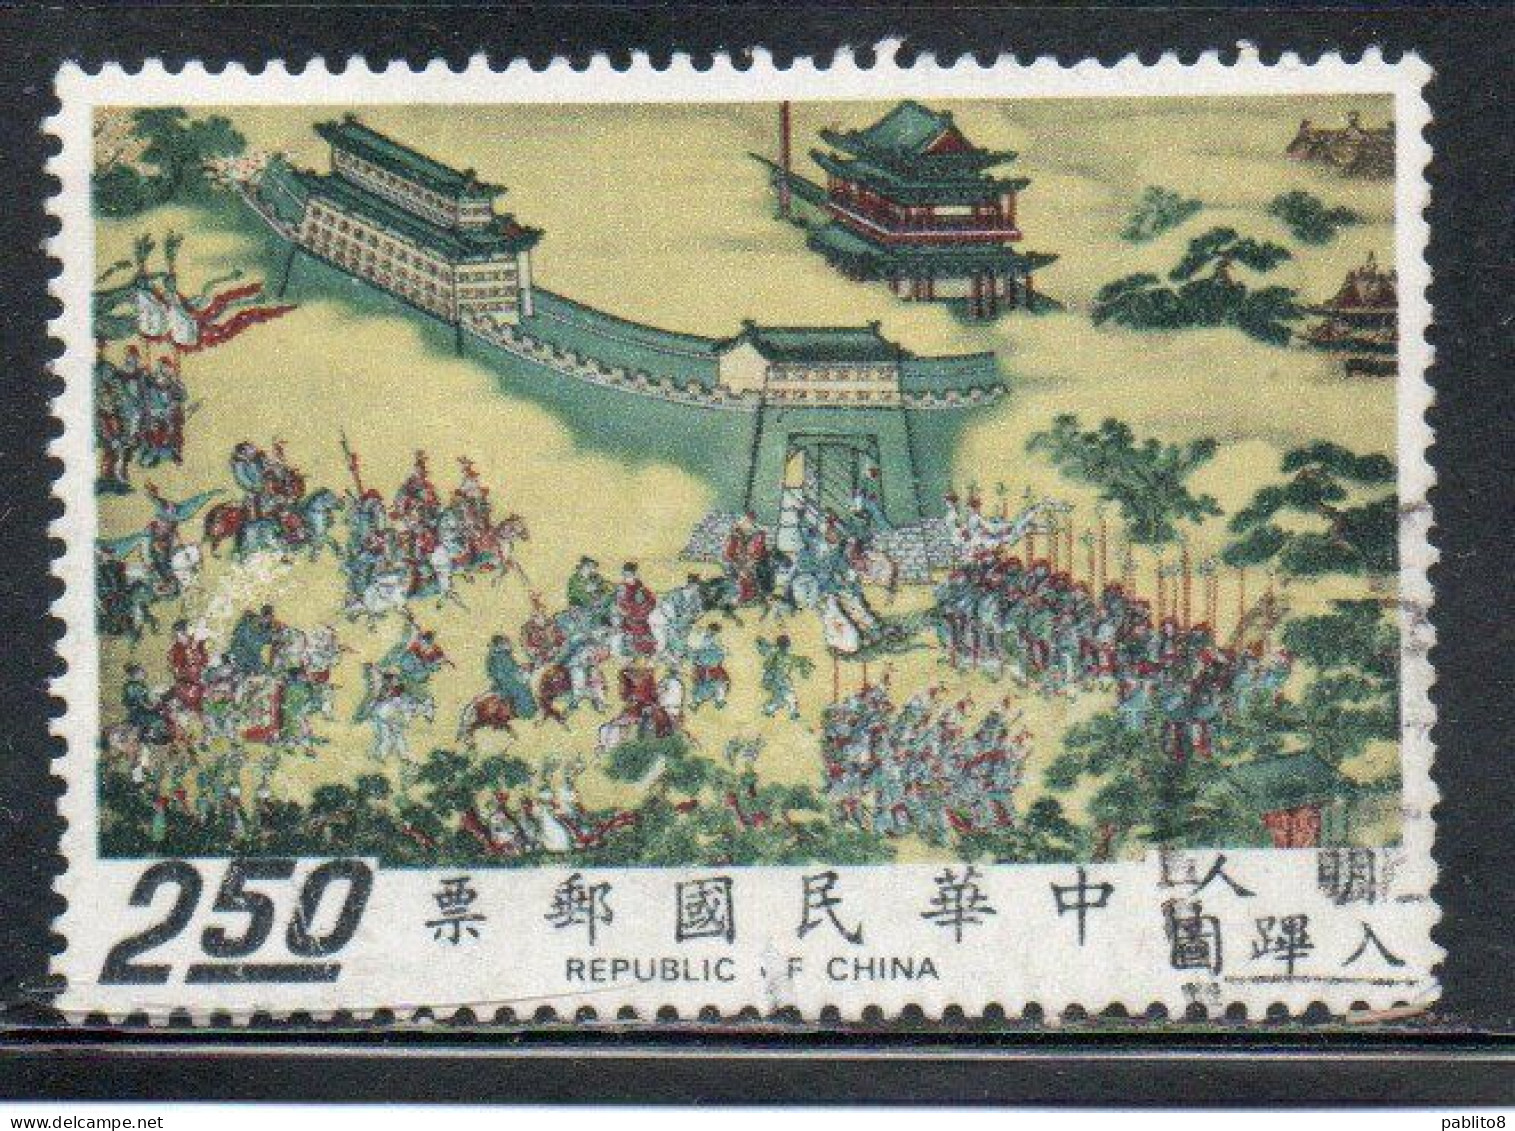 CHINA REPUBLIC CINA TAIWAN FORMOSA 1972 SCROLLS DEPICTING EMPEROR SHIH-TSUNG'S 2.50$ USED USATO OBLITERE' - Usati